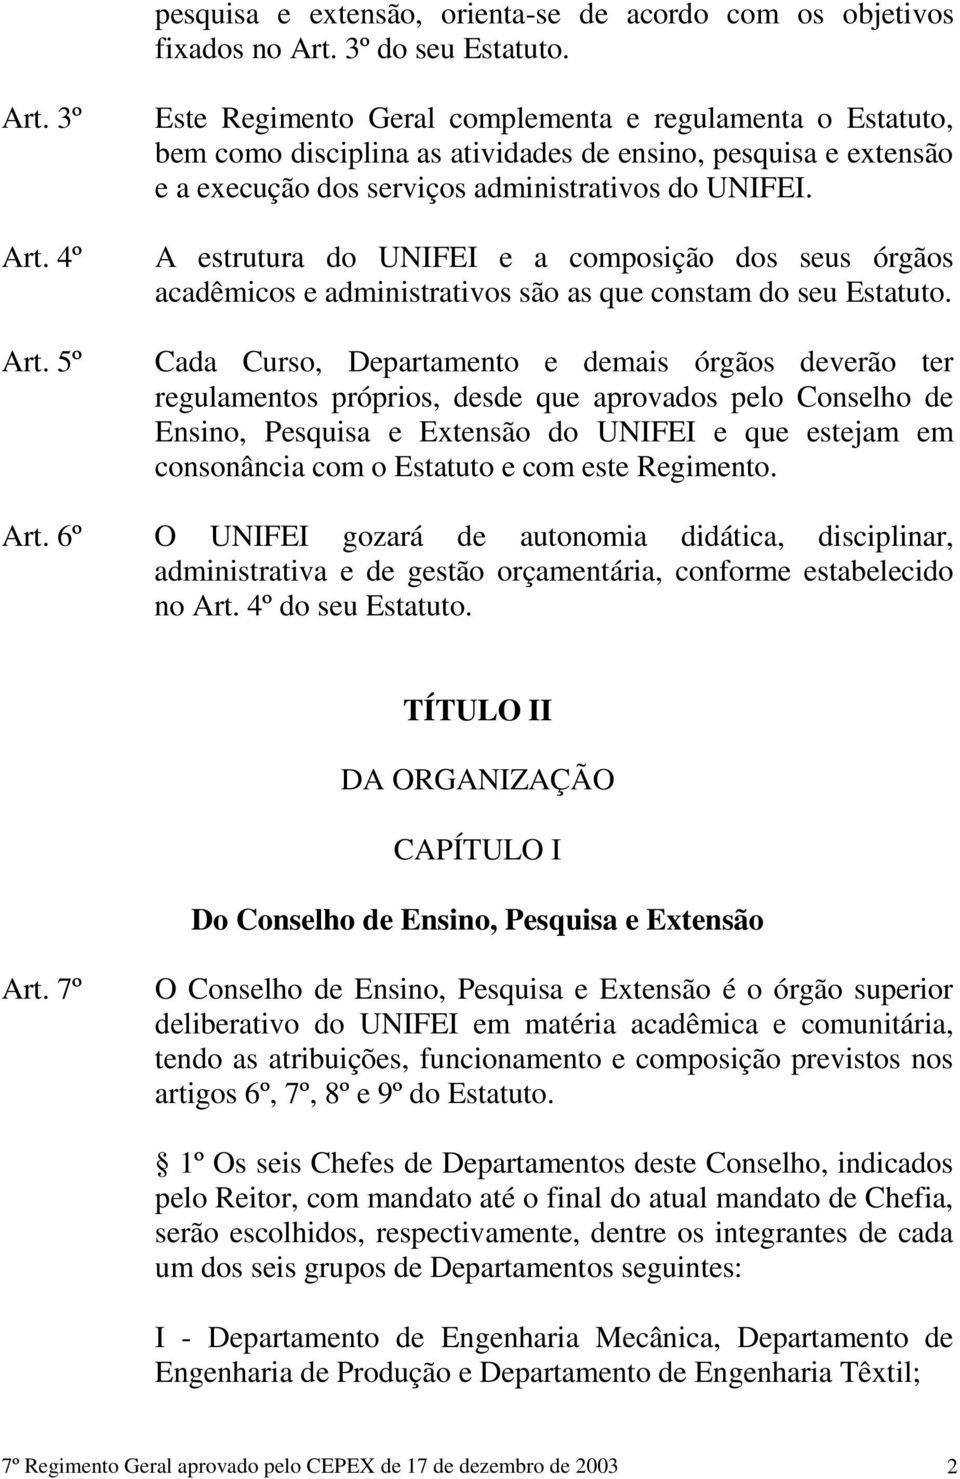 A estrutura do UNIFEI e a composição dos seus órgãos acadêmicos e administrativos são as que constam do seu Estatuto.